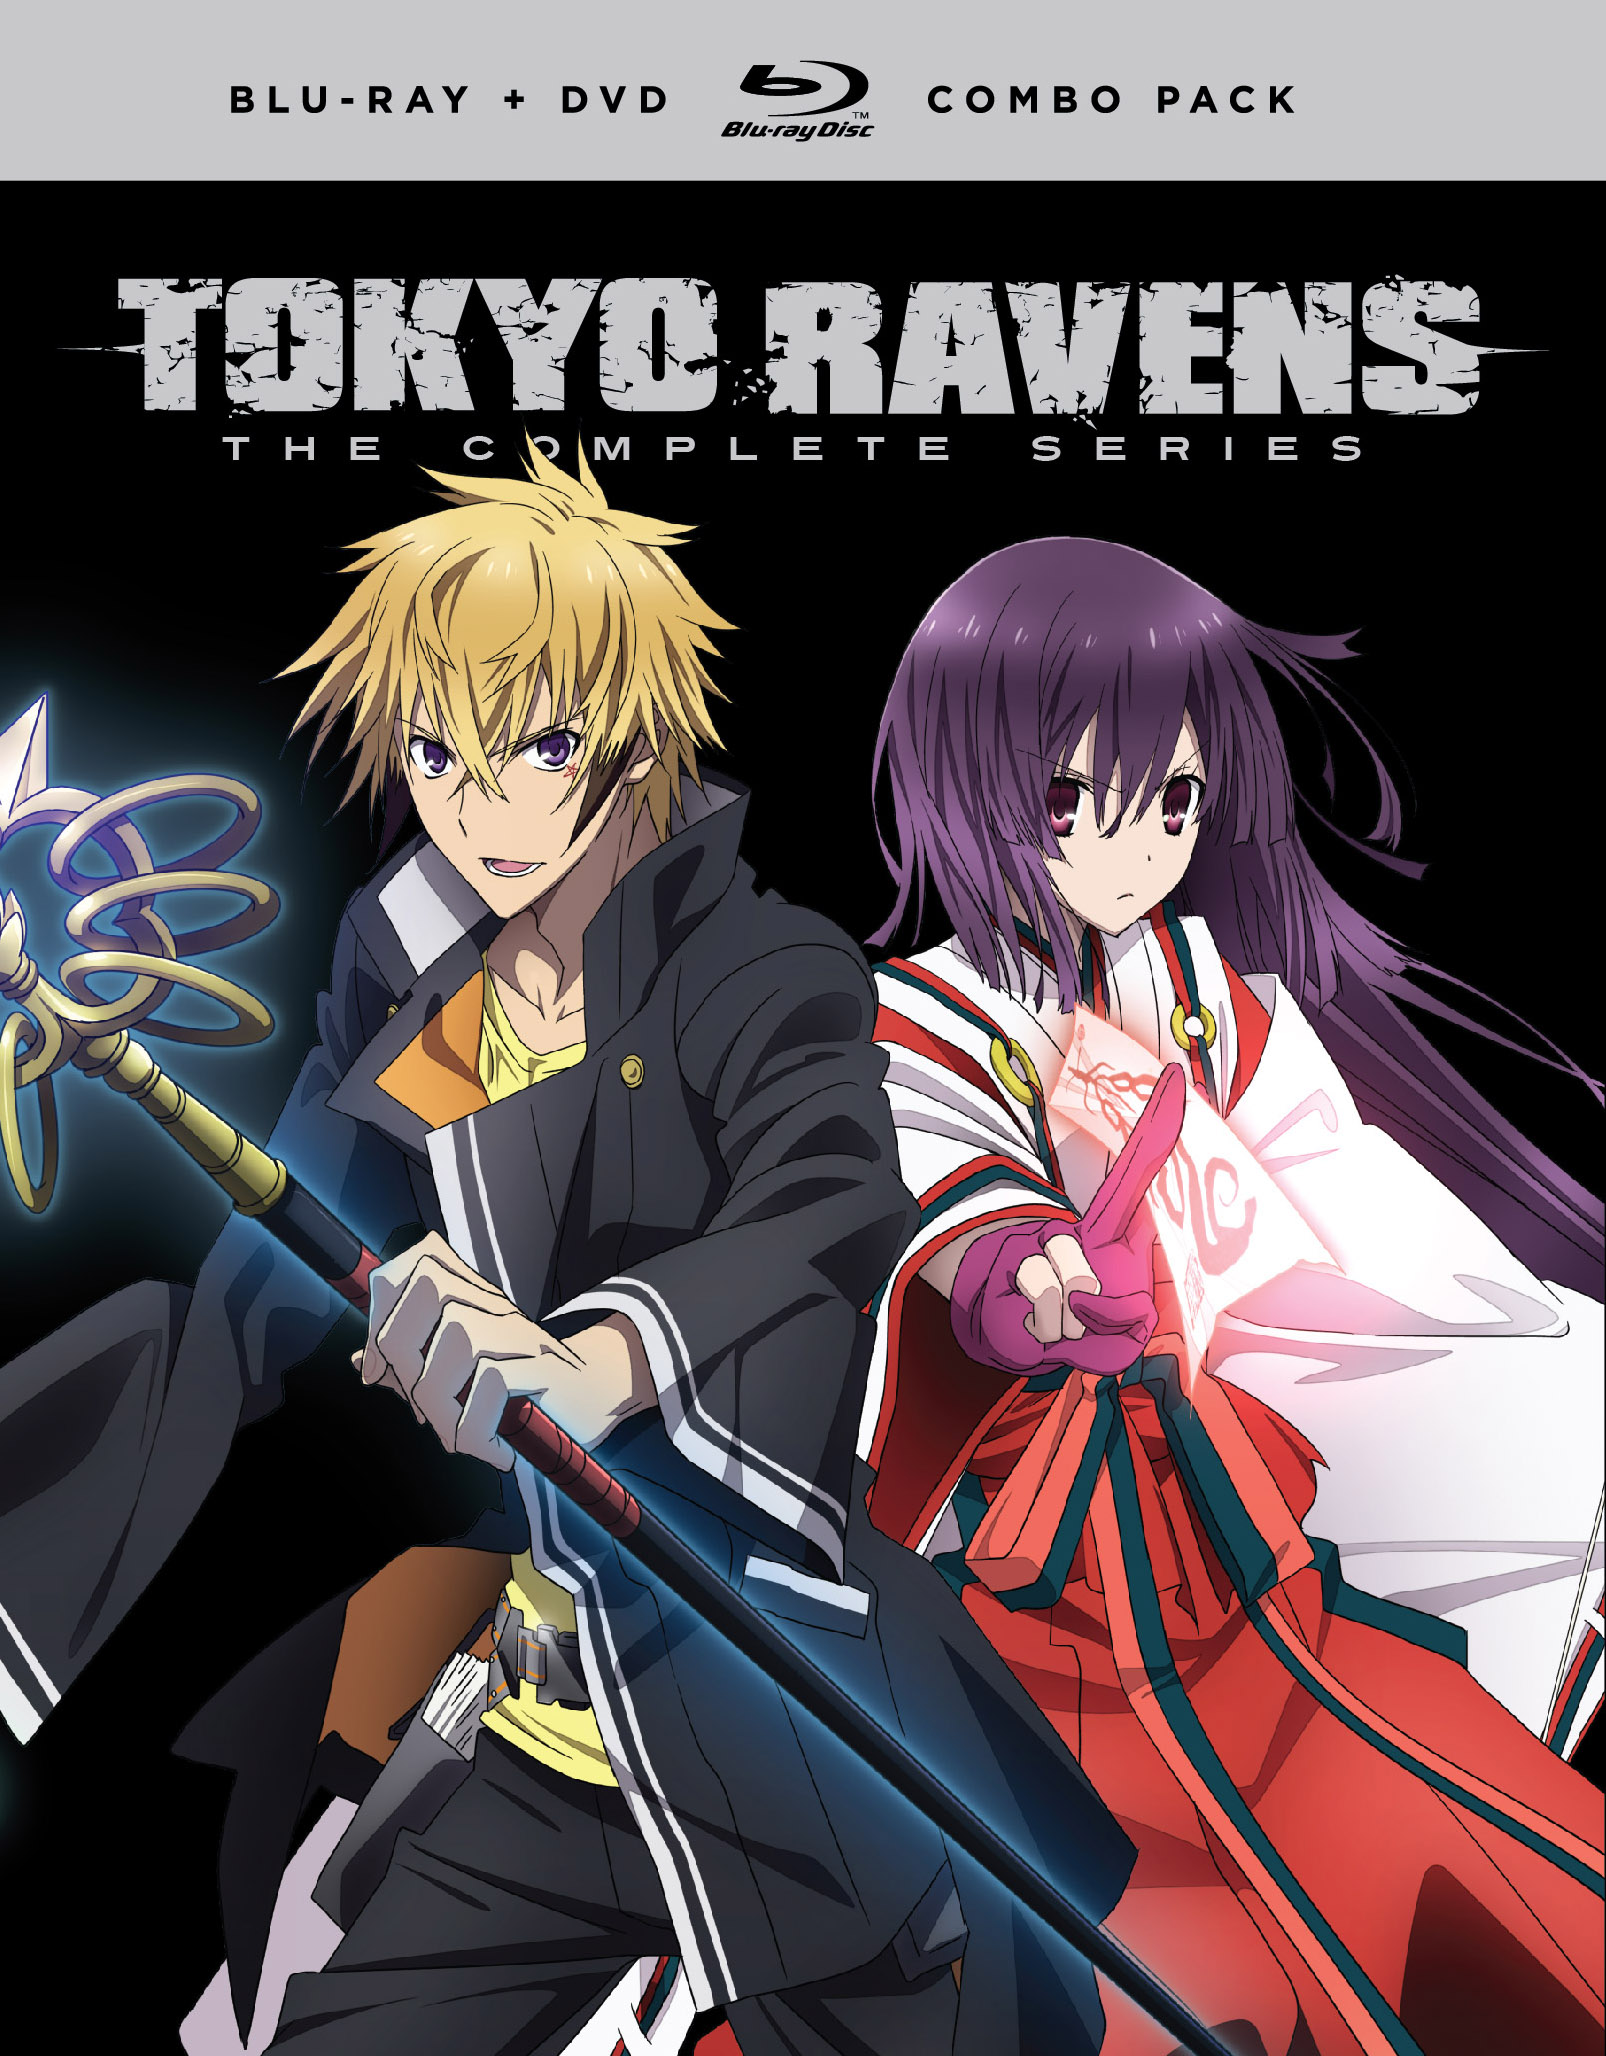 Tokyo Ravens by ploua on deviantART